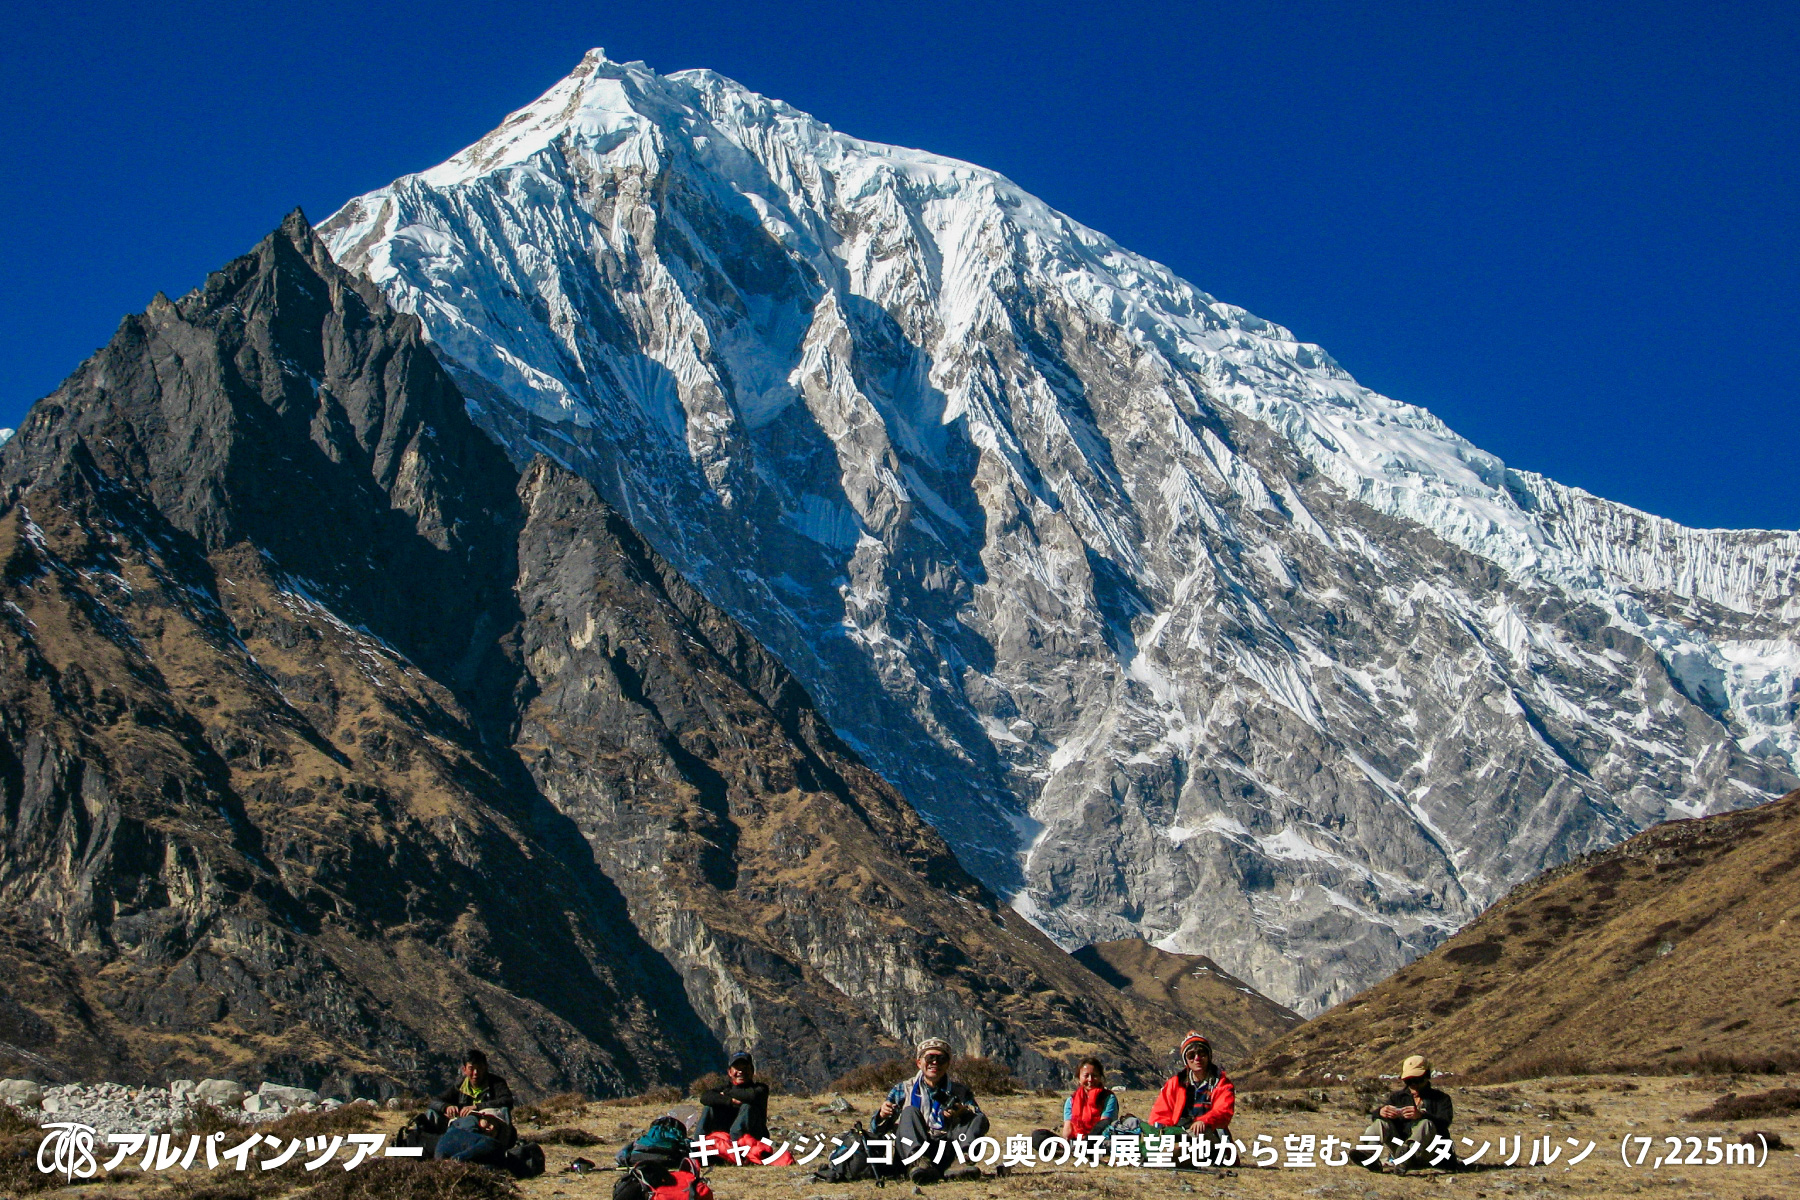 【エリア紹介】 世界で最も美しい谷と称されたランタン谷（ネパール）